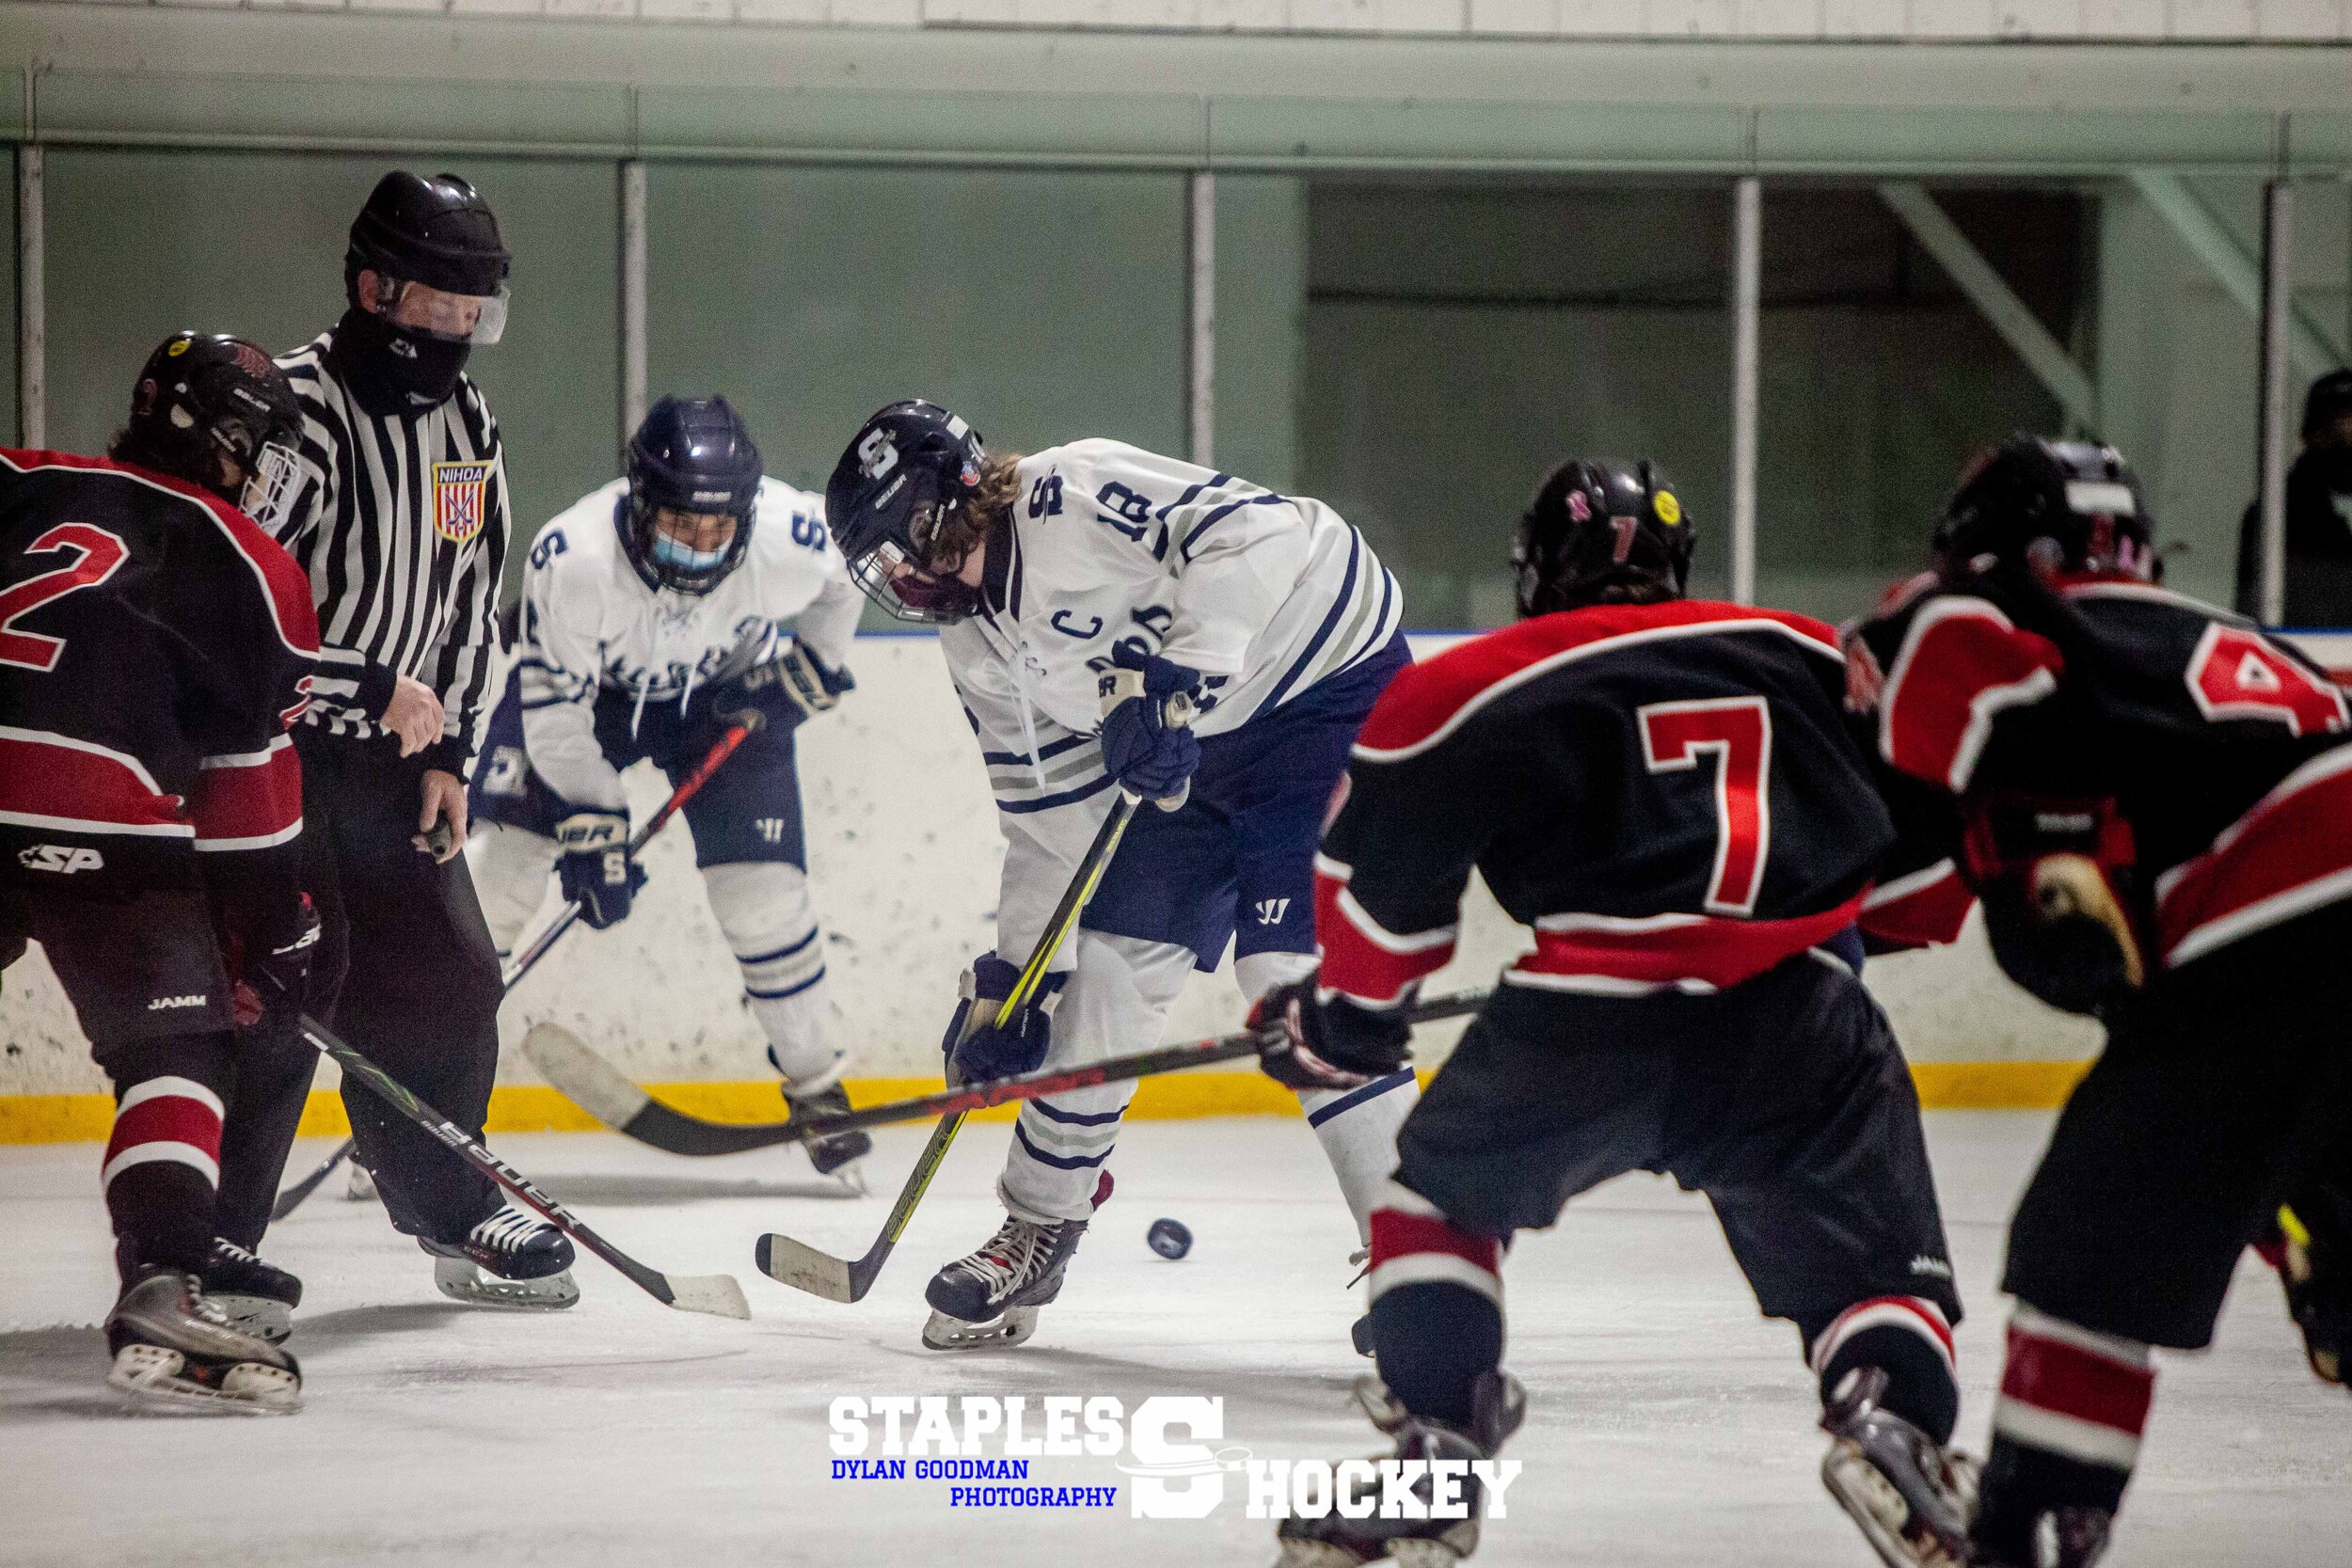 74-Staples Varsity Boys Hockey vs. Masuk - February 27, 2021 - Dylan Goodman Photography.jpg